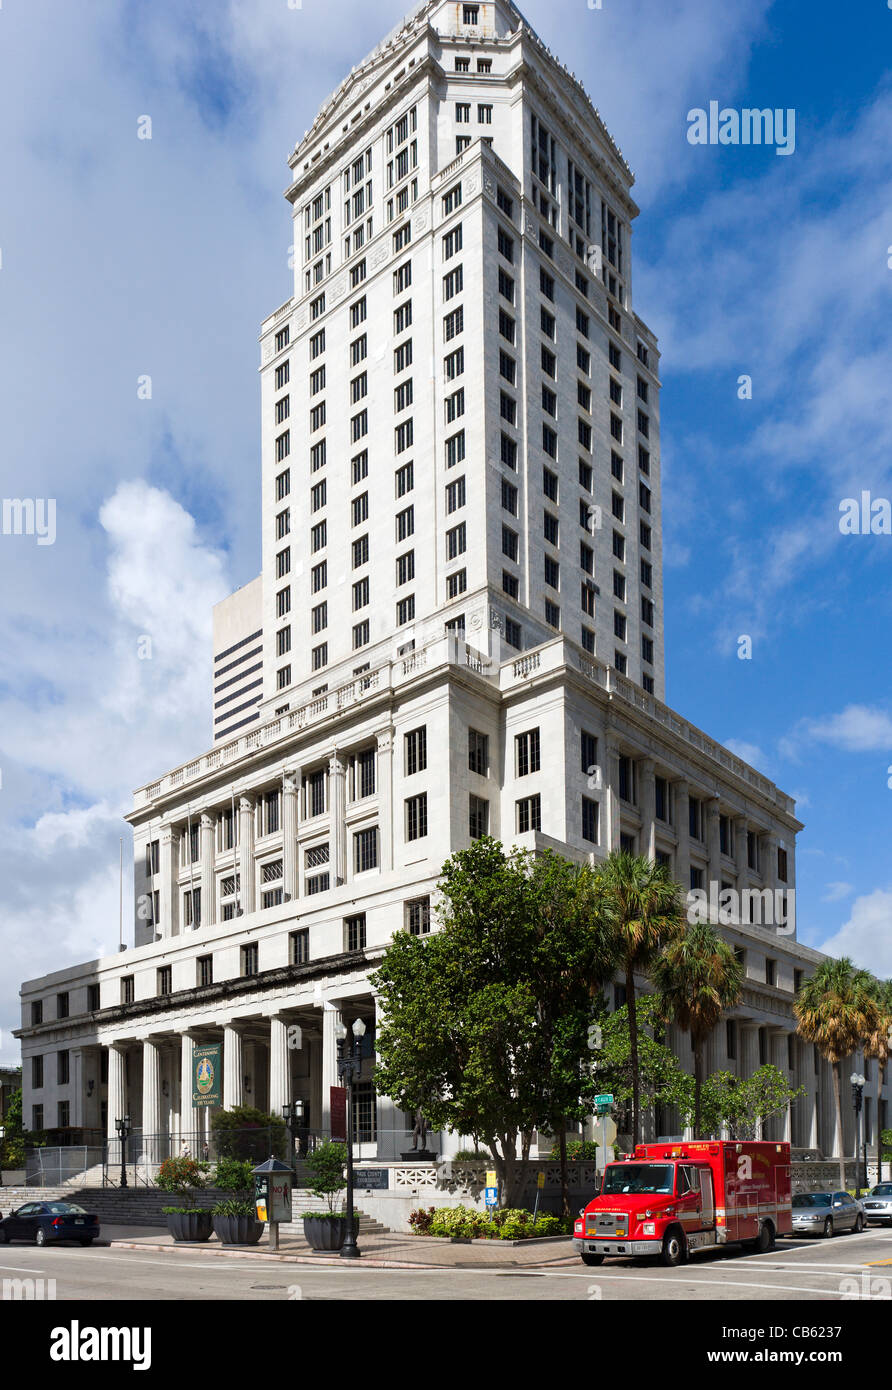 Miami-Dade County Courthouse, West Flagler Street, Miami, Florida, USA Stock Photo